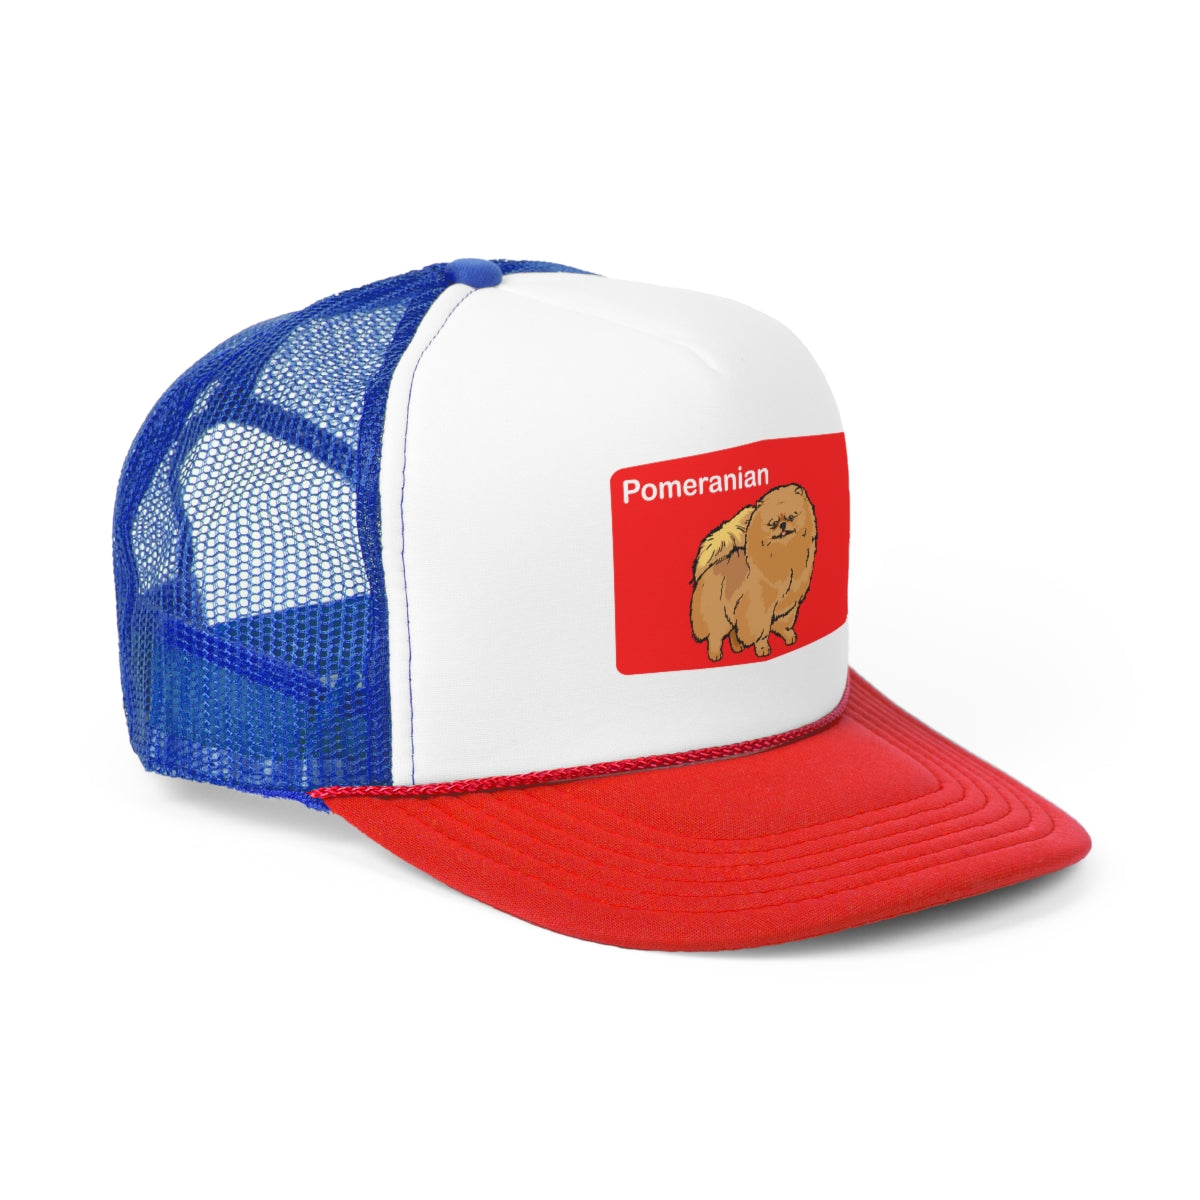 Pomeranian Trucker Hat